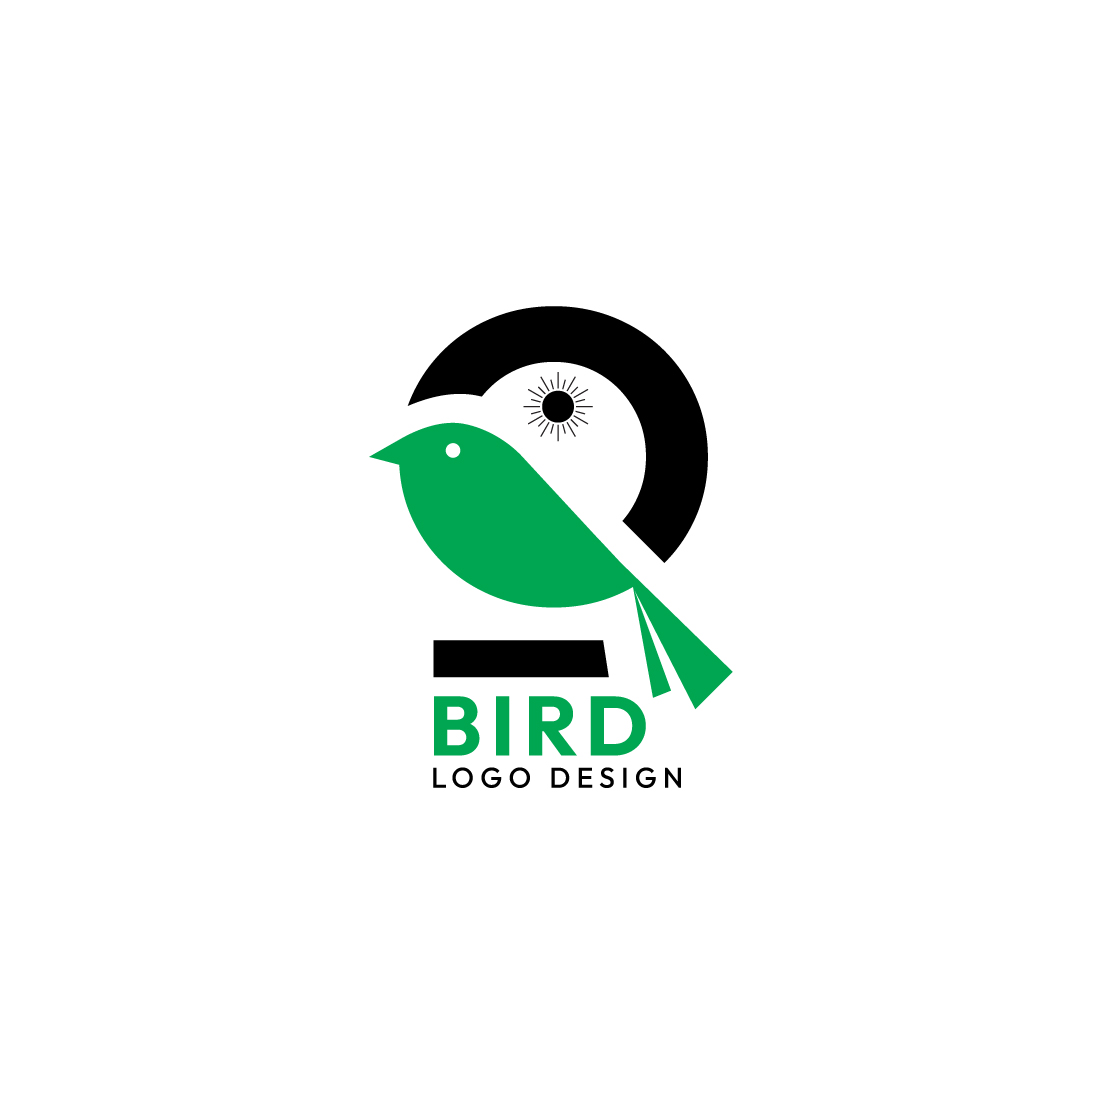 Bird Logo Design Bundle for Businesses - Master Bundles preview image.